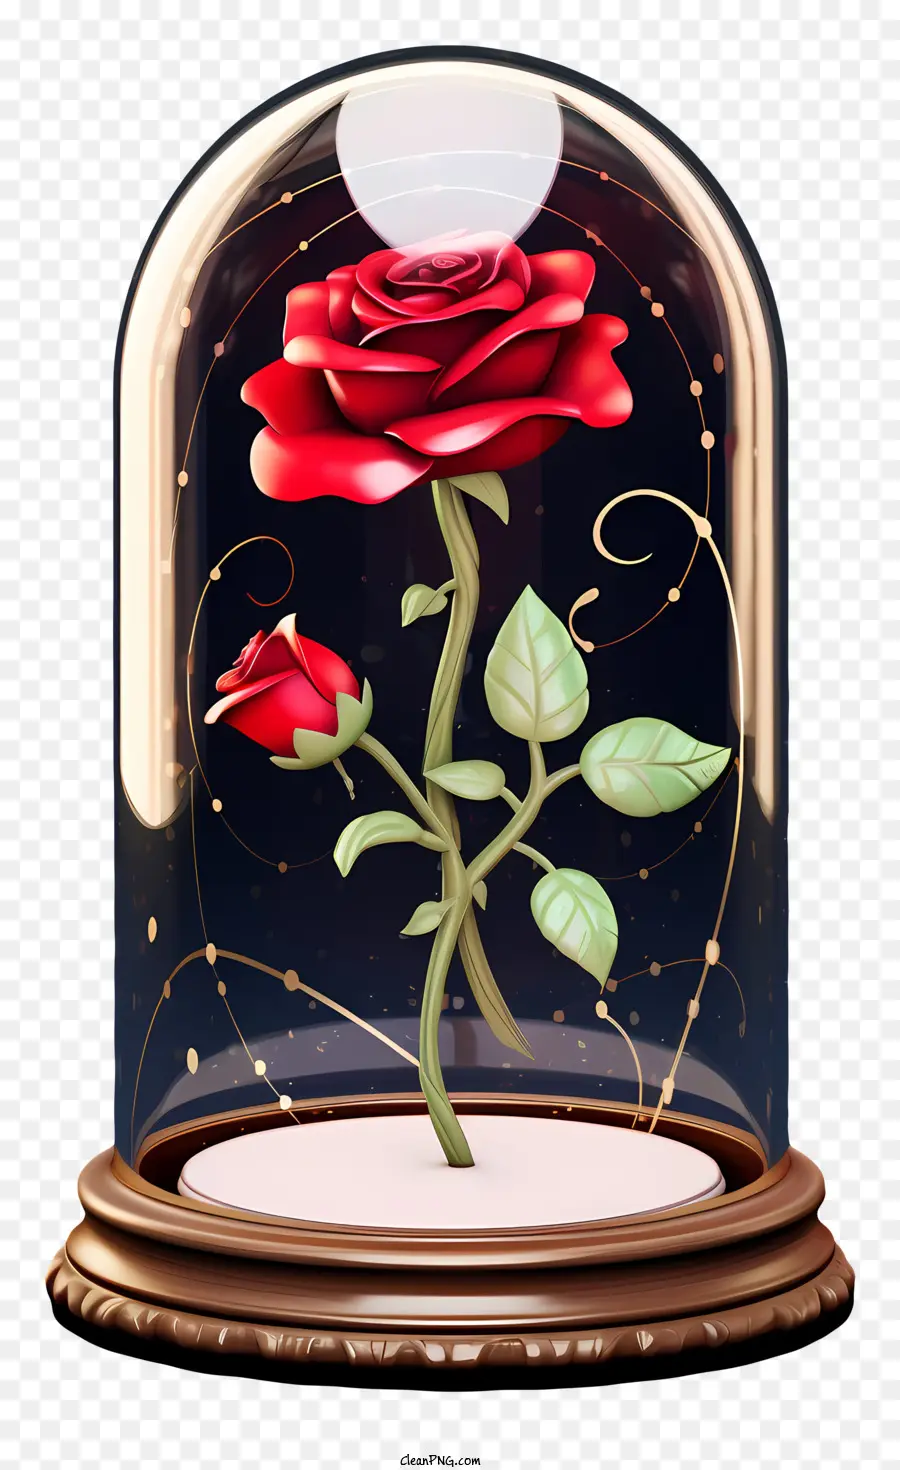 bông hồng đỏ - Red Rose trong vòm thủy tinh với những ngôi sao vàng